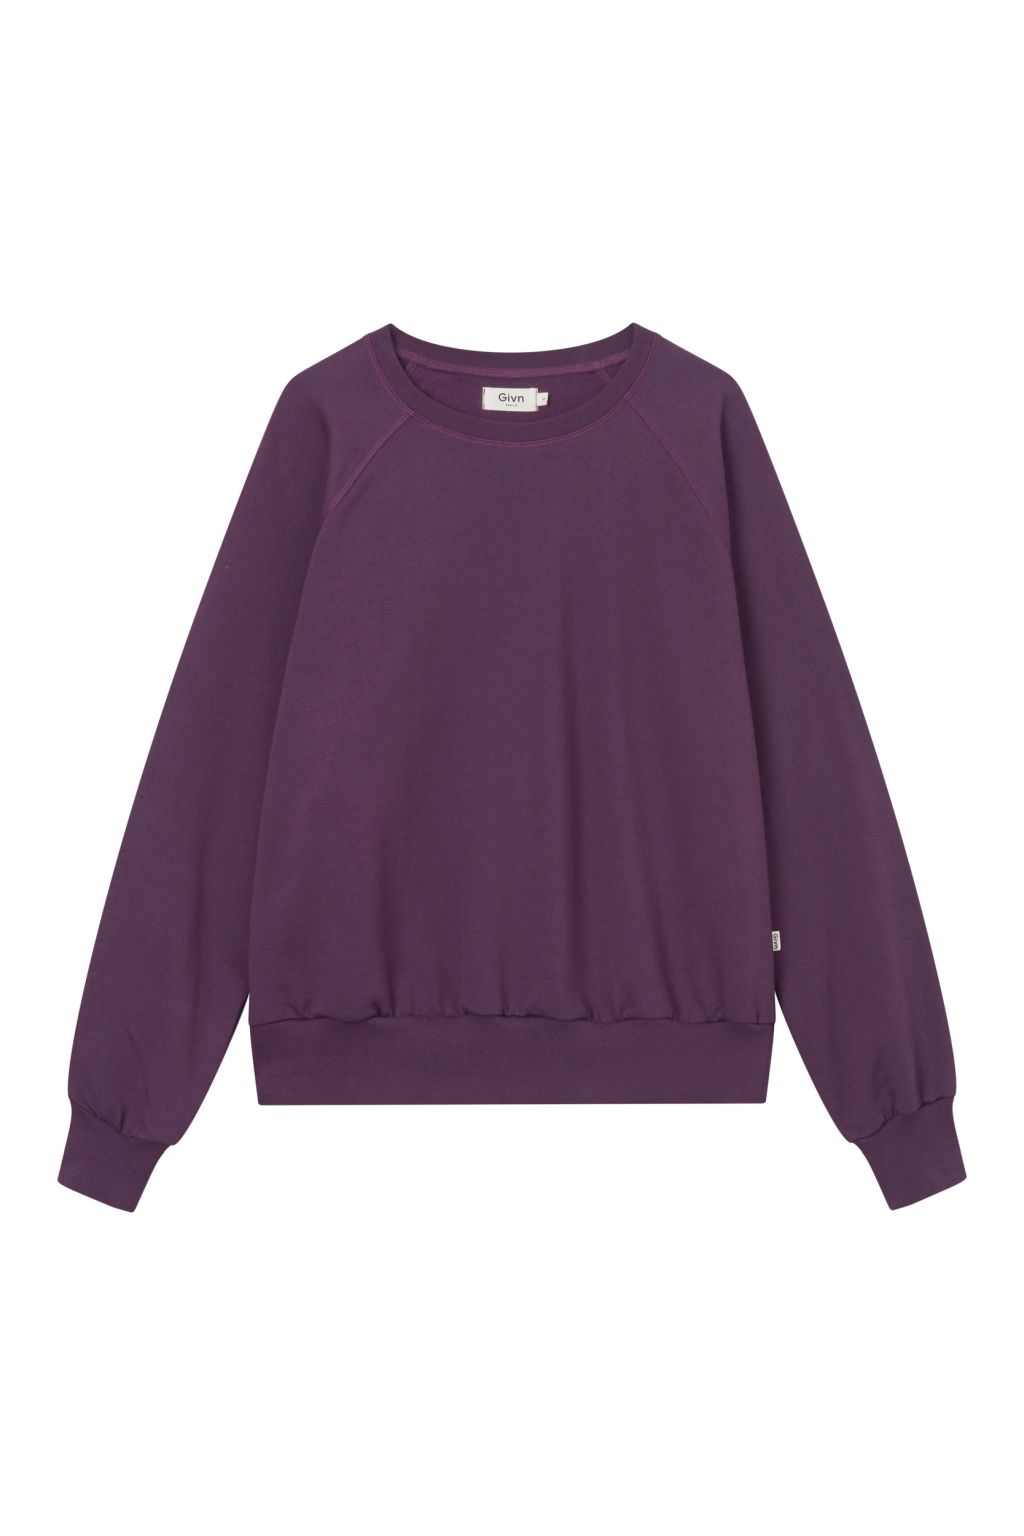 Dede - Sweater - Bio-Baumwolle Dark Purple M